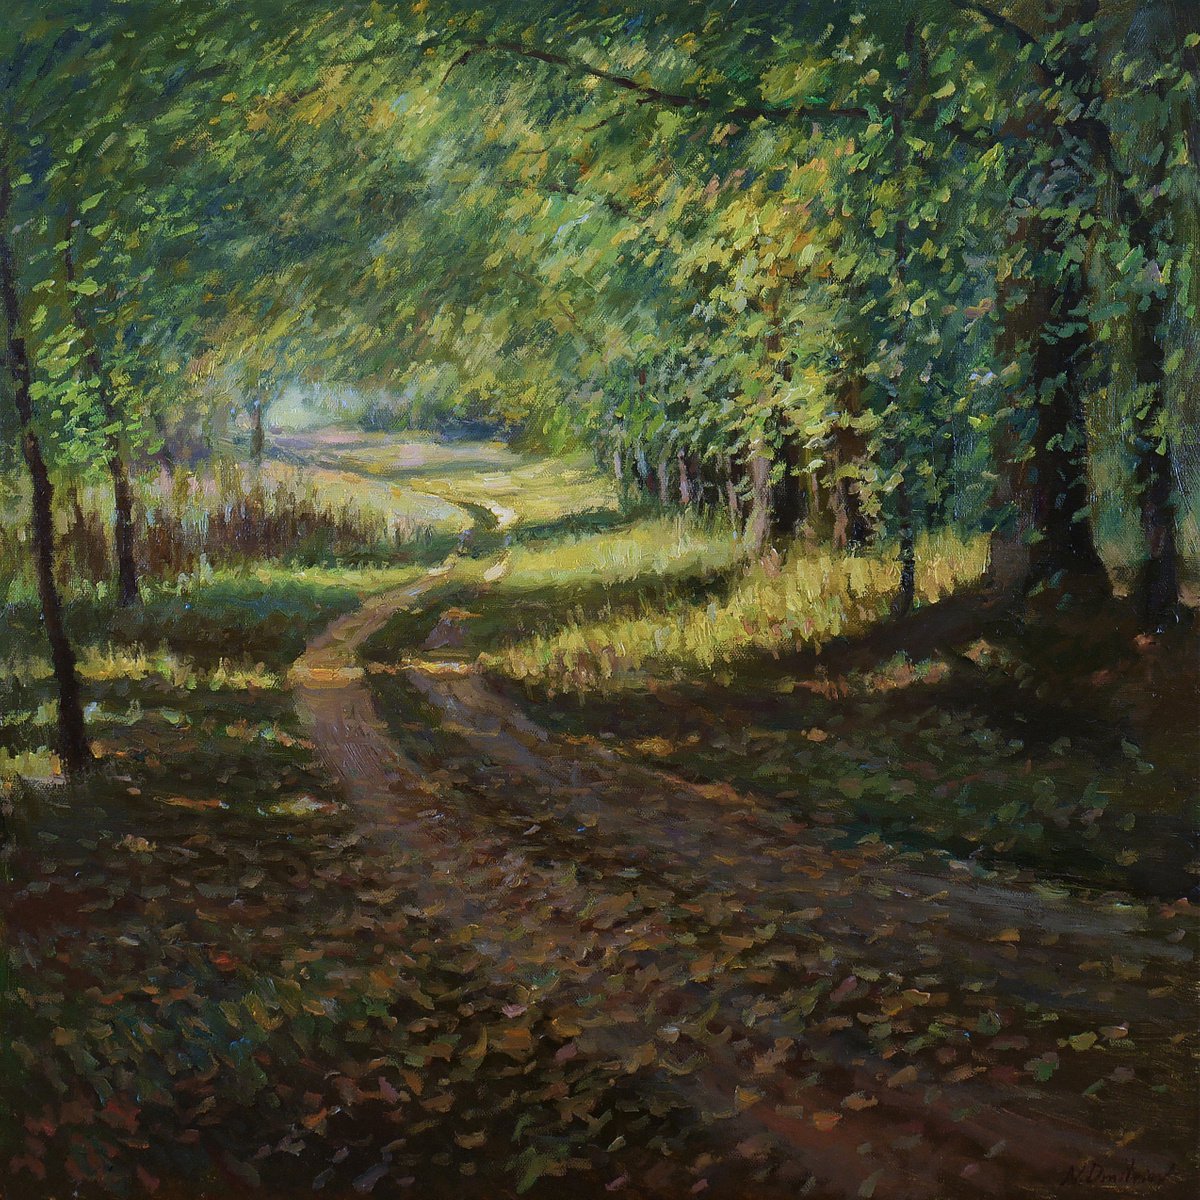 Sunny Autumn Path - autumn landscape painting by Nikolay Dmitriev